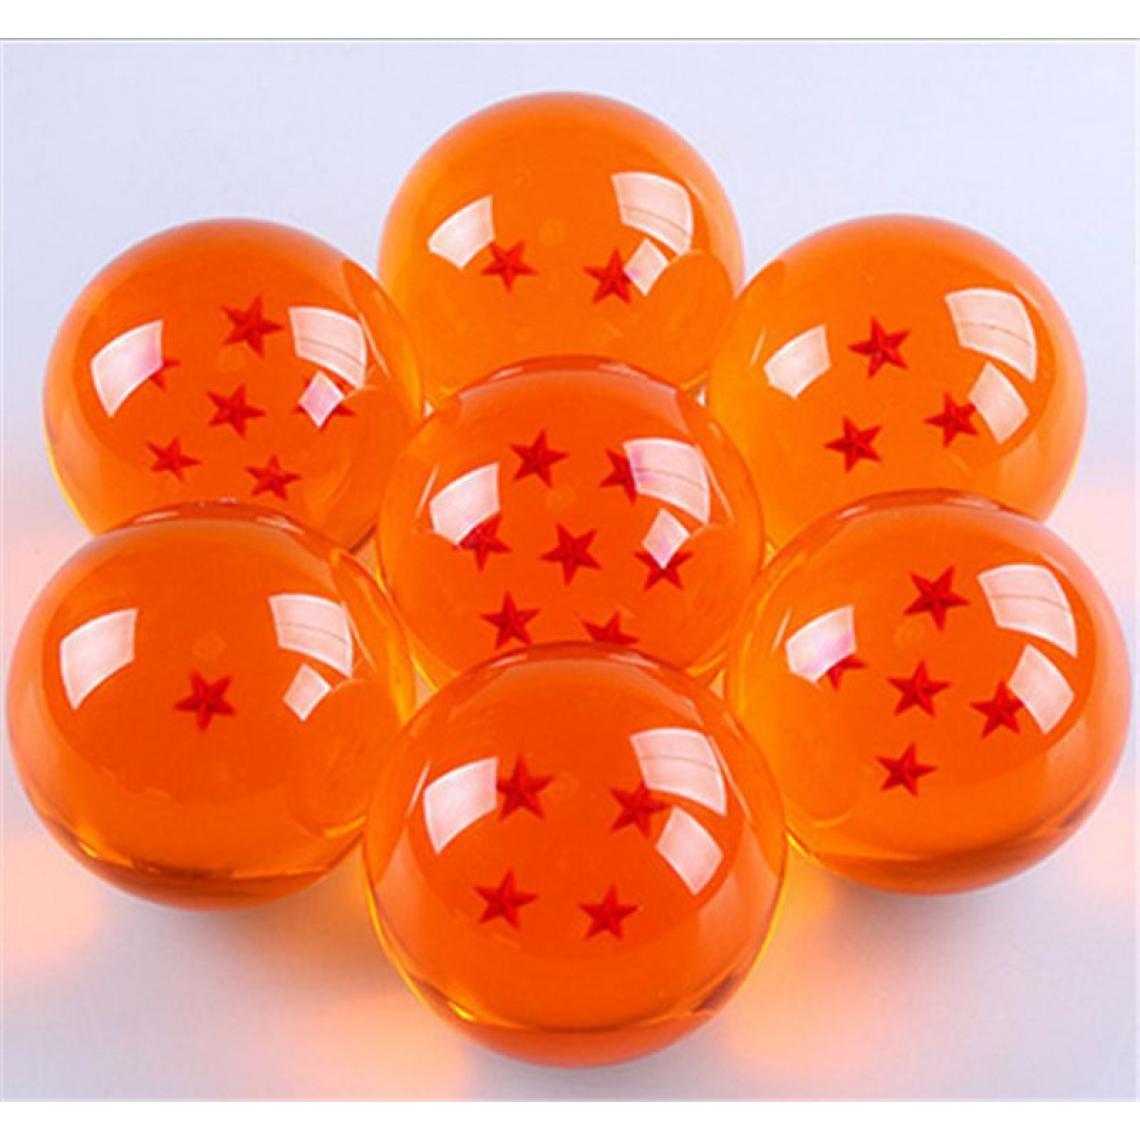 Universal - Boule de cristal de 7,5cm grande taille 1234567 Planète Action classique Action numérique Cadeau numérique Nouveautés(Orange) - Mangas